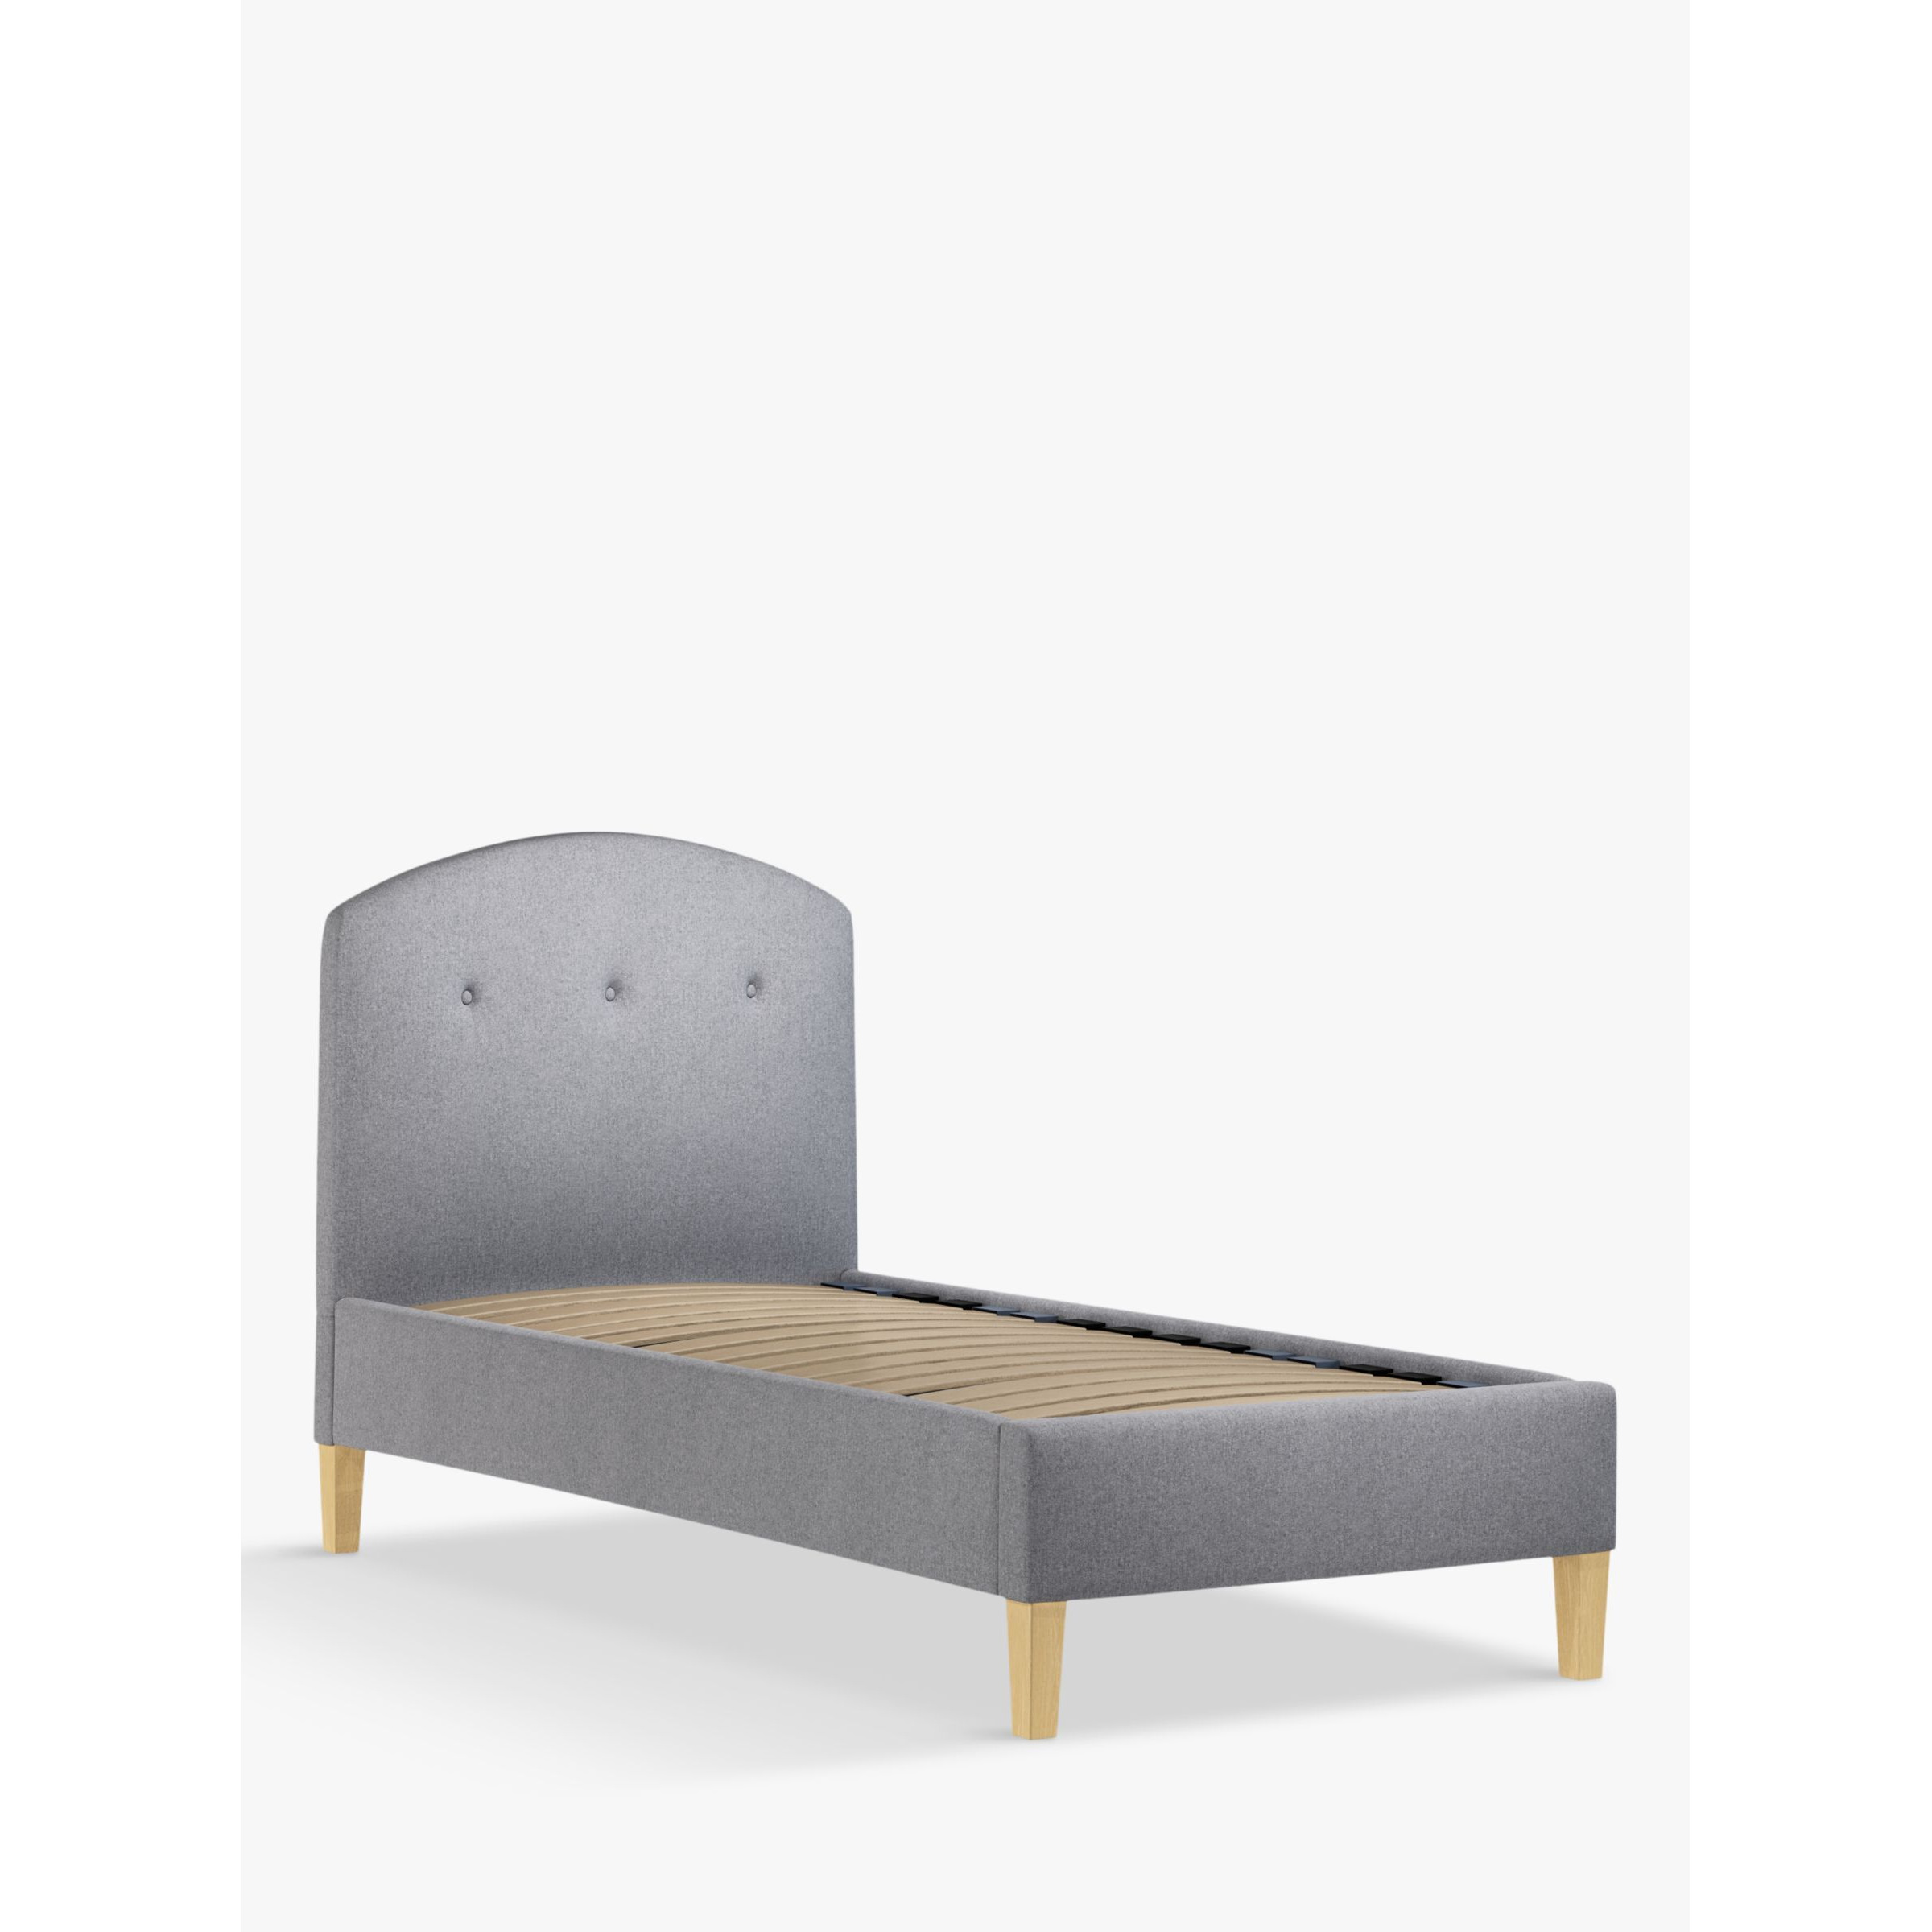 John Lewis Grace Child Compliant Upholstered Bed Frame, Single - image 1